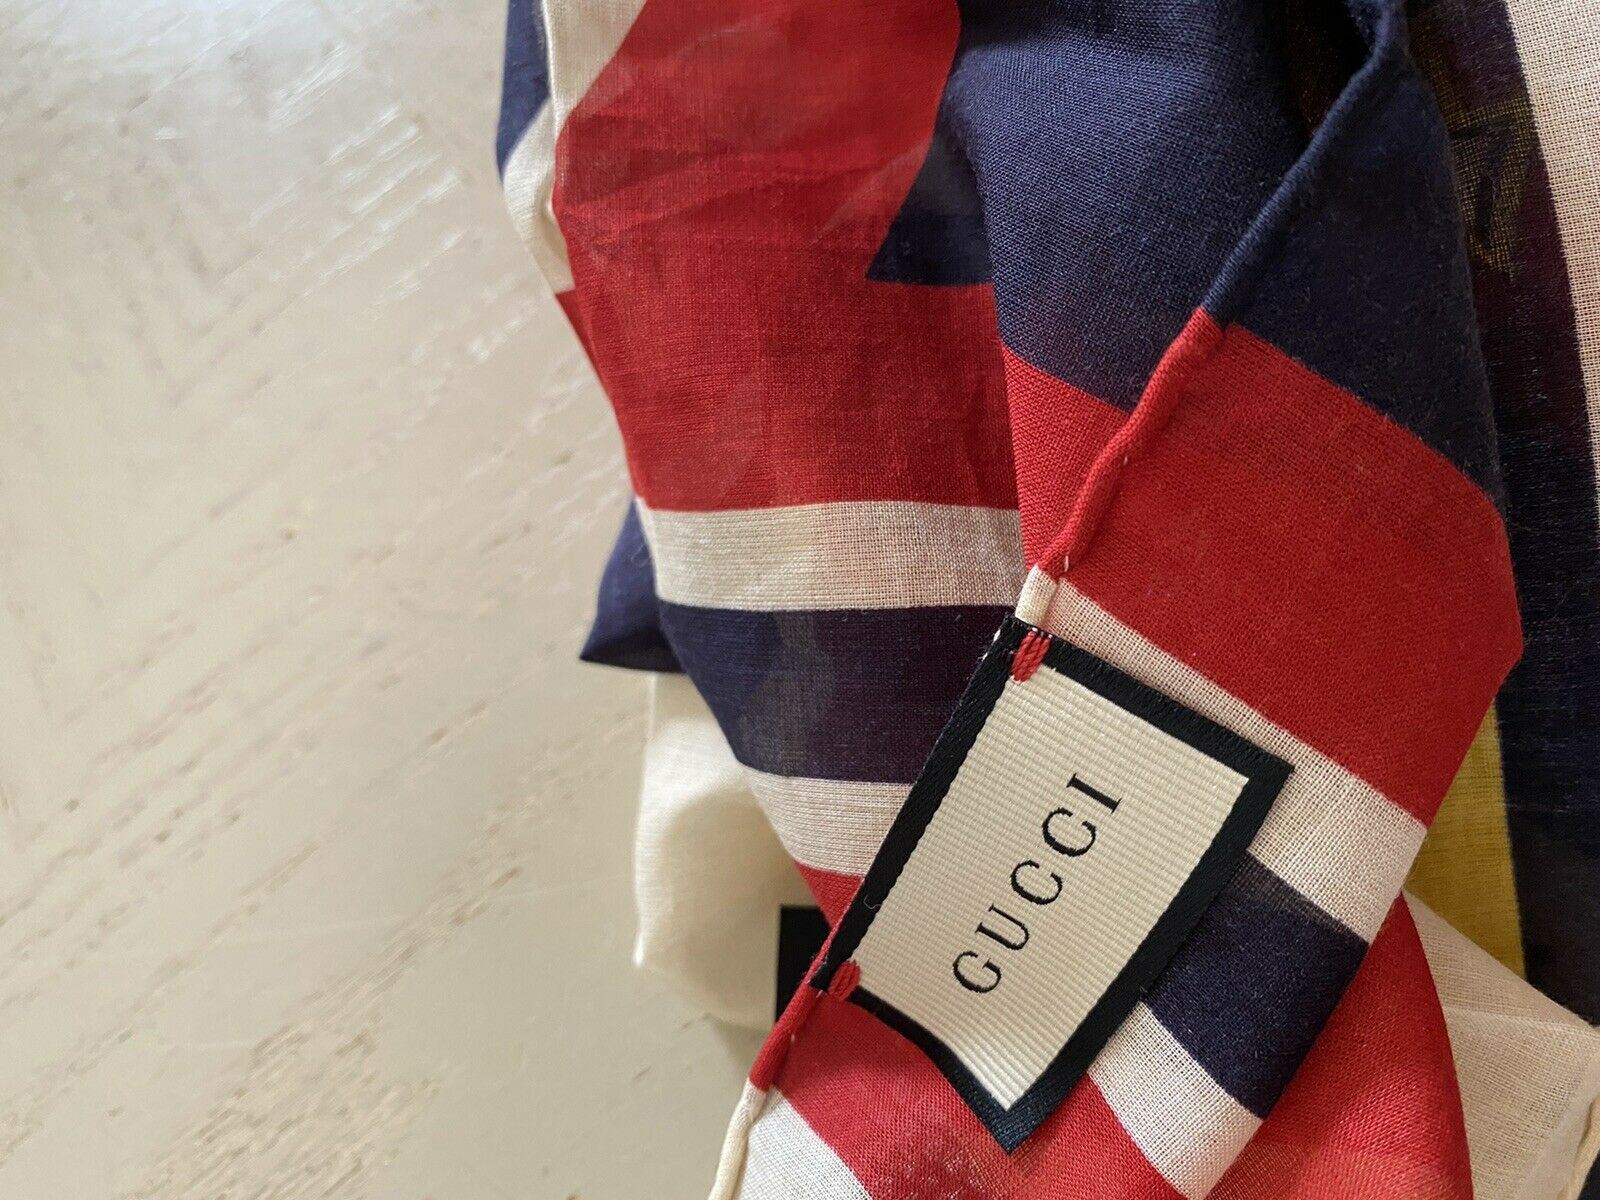 Neuer Gucci Damen-Bandanna-Schal in Weiß/Gelb/Rot aus Italien